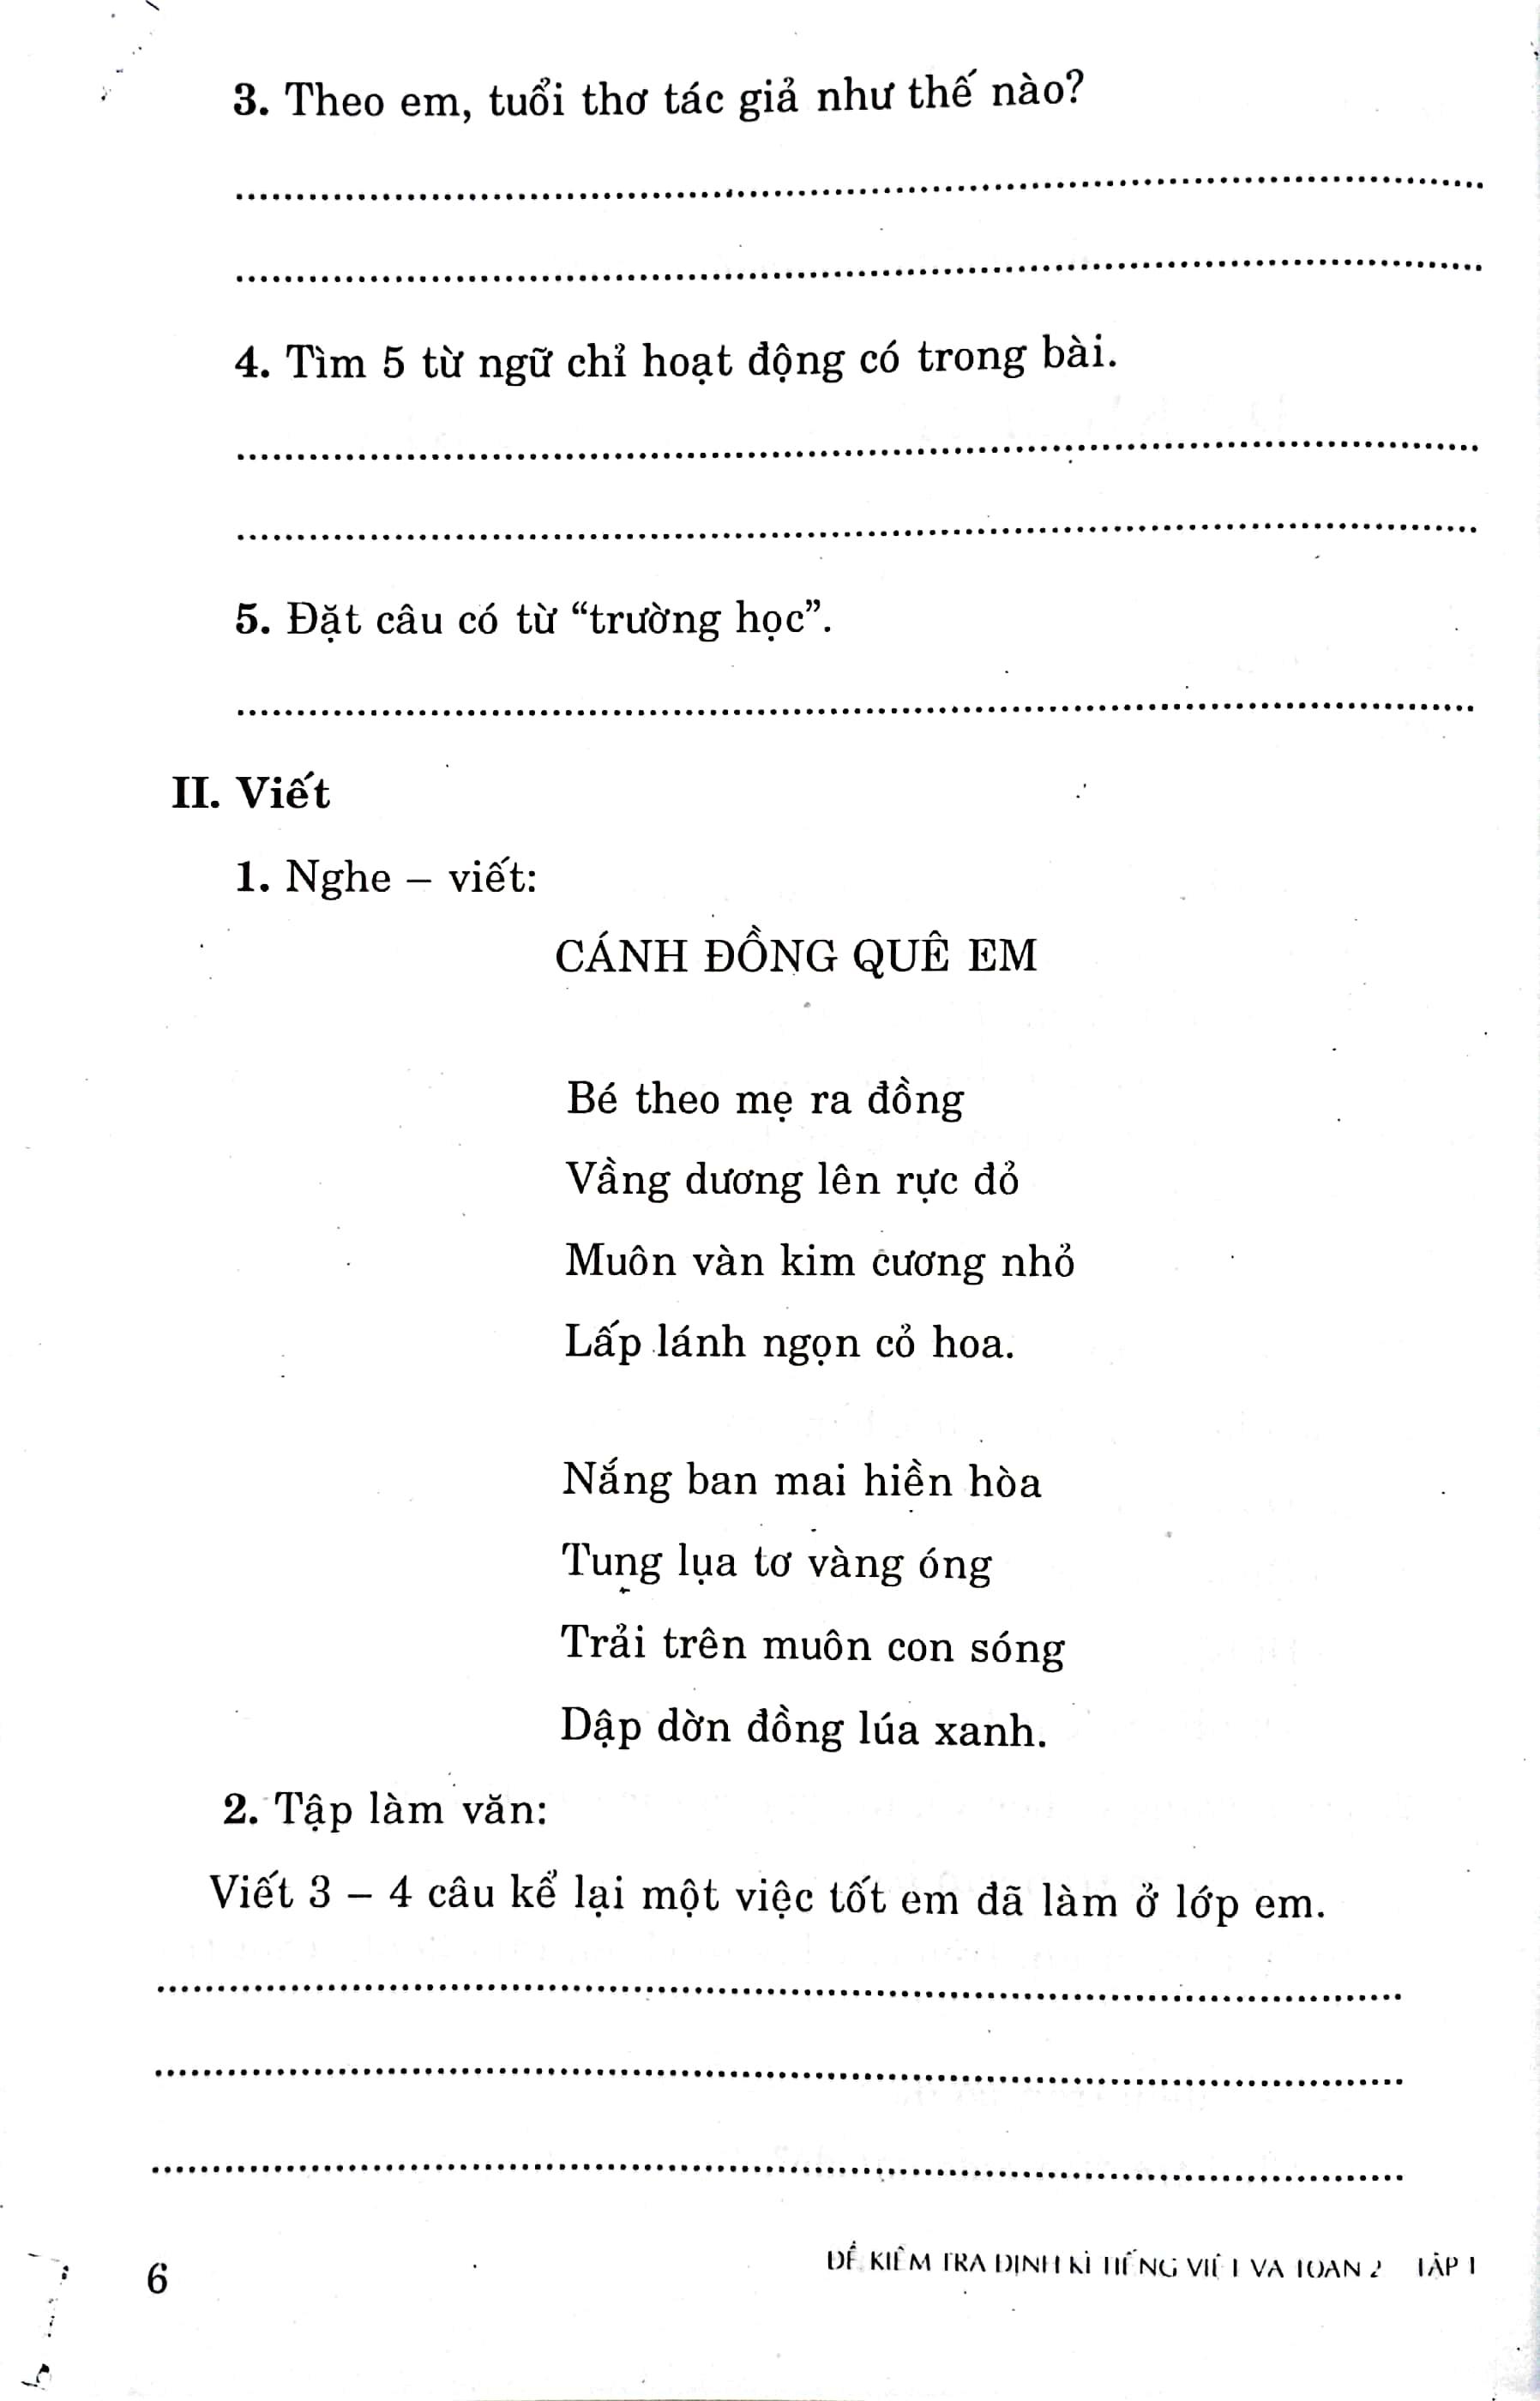 Hình ảnh Đề Kiểm Tra Định Kỳ Tiếng Việt Và Toán 2 - Tập Một